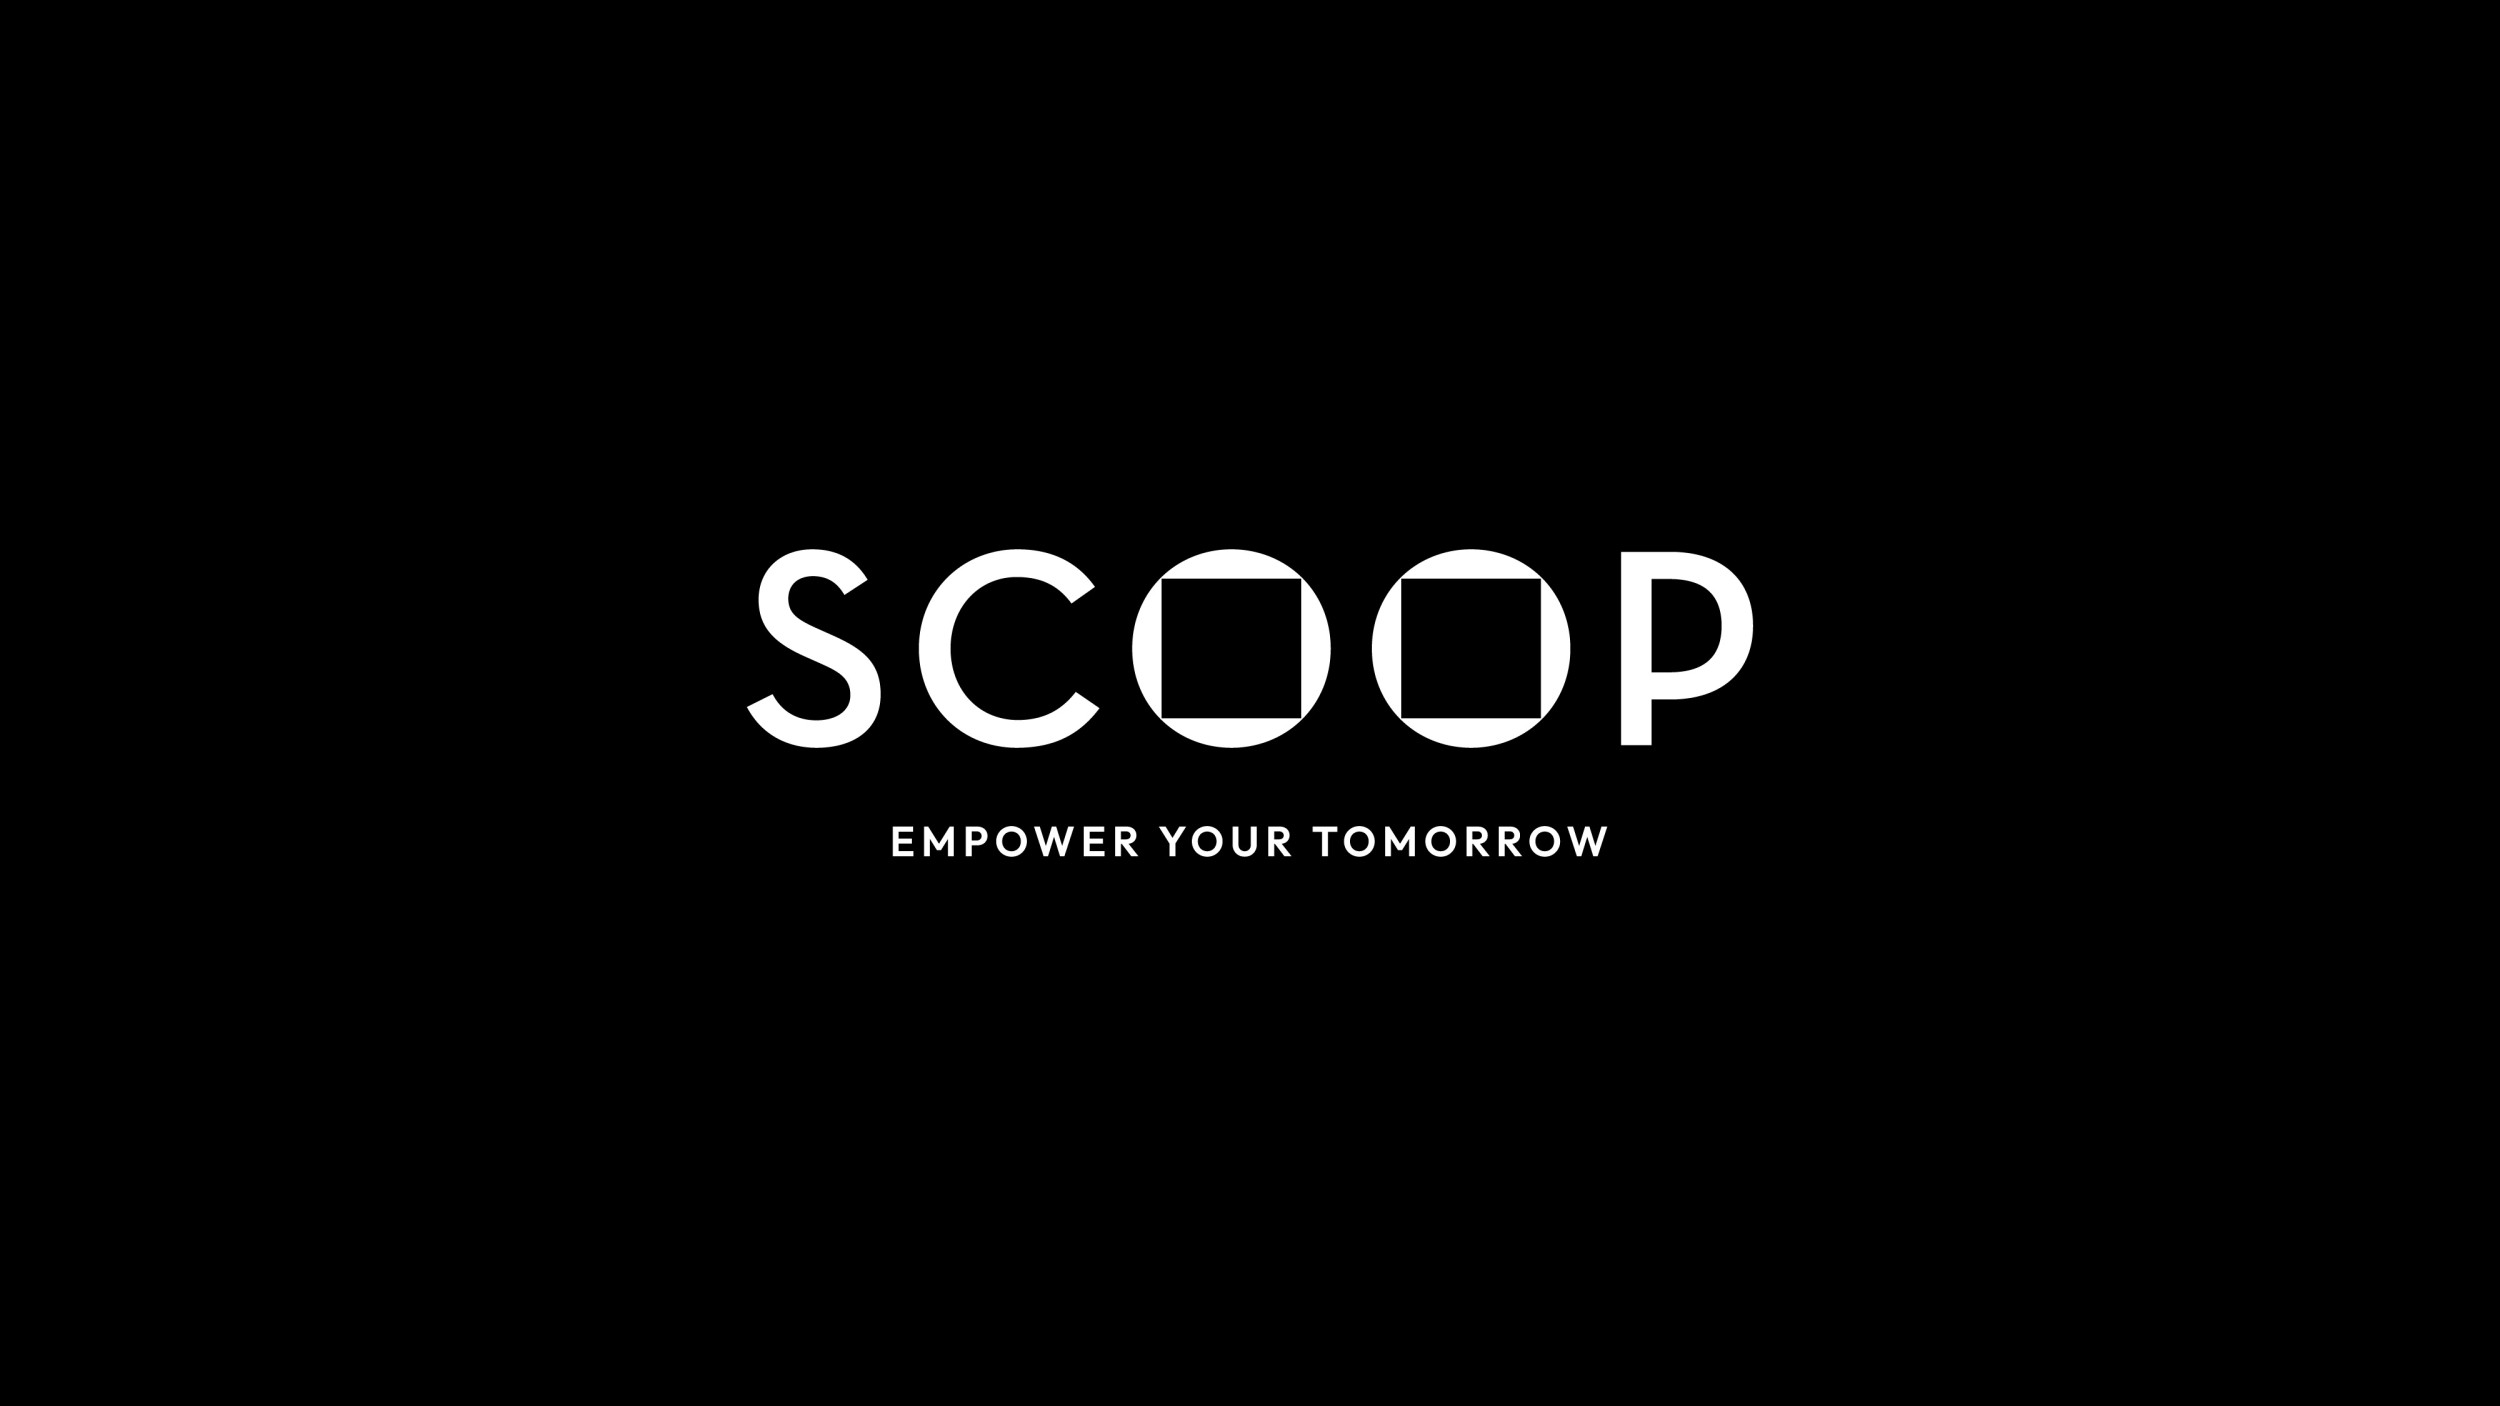 1. Scoop After Logo